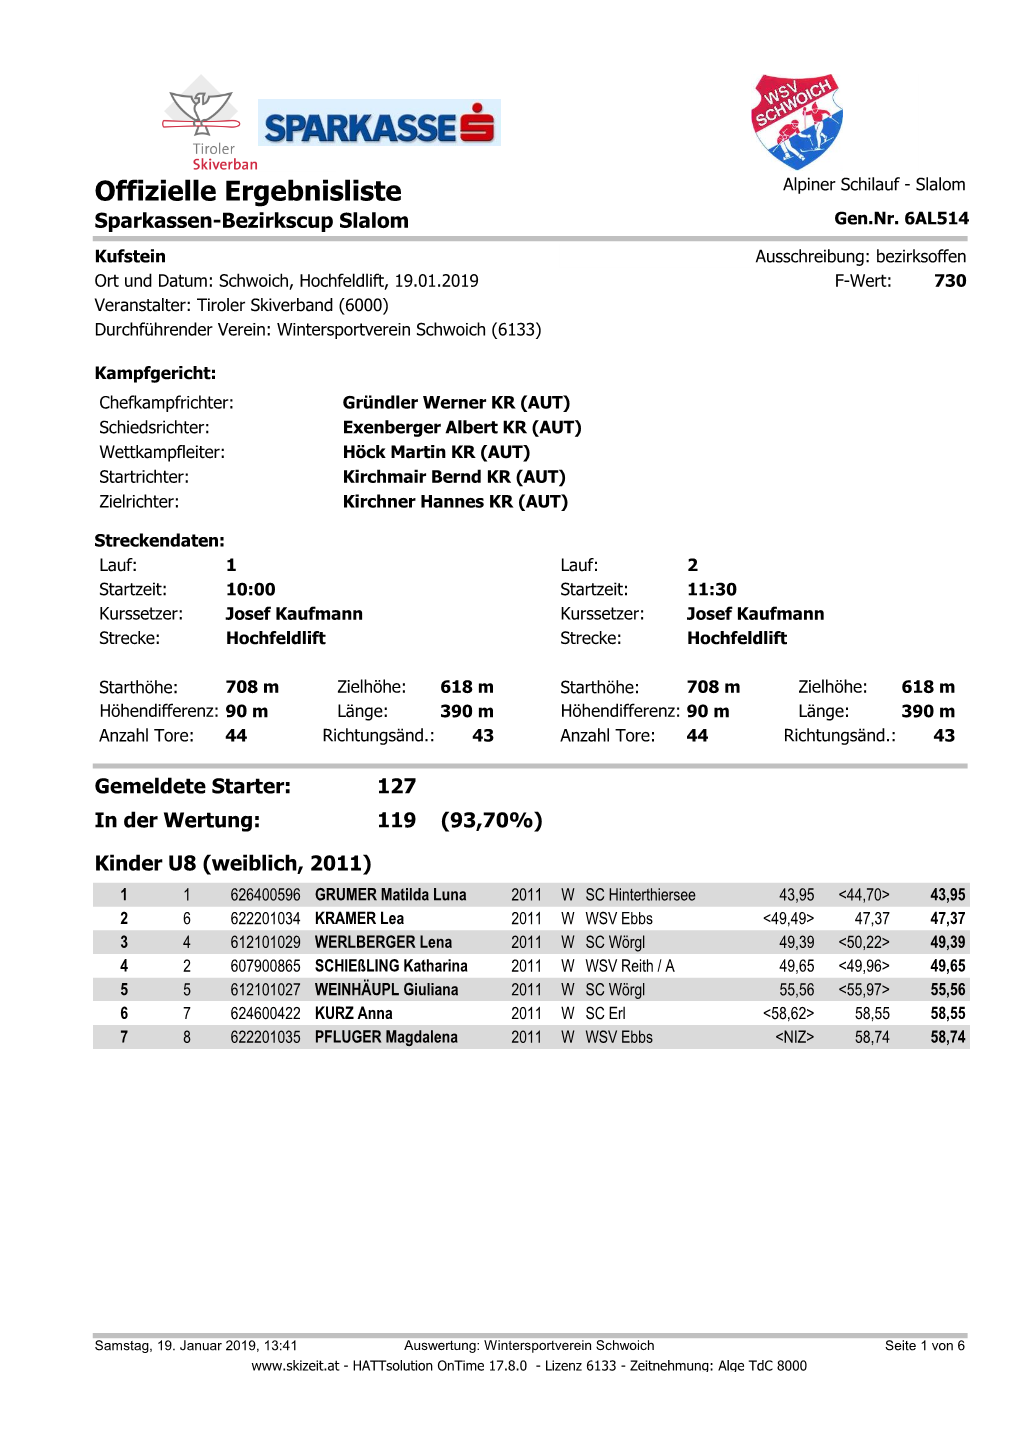 Offizielle Ergebnisliste Alpiner Schilauf - Slalom Sparkassen-Bezirkscup Slalom Gen.Nr